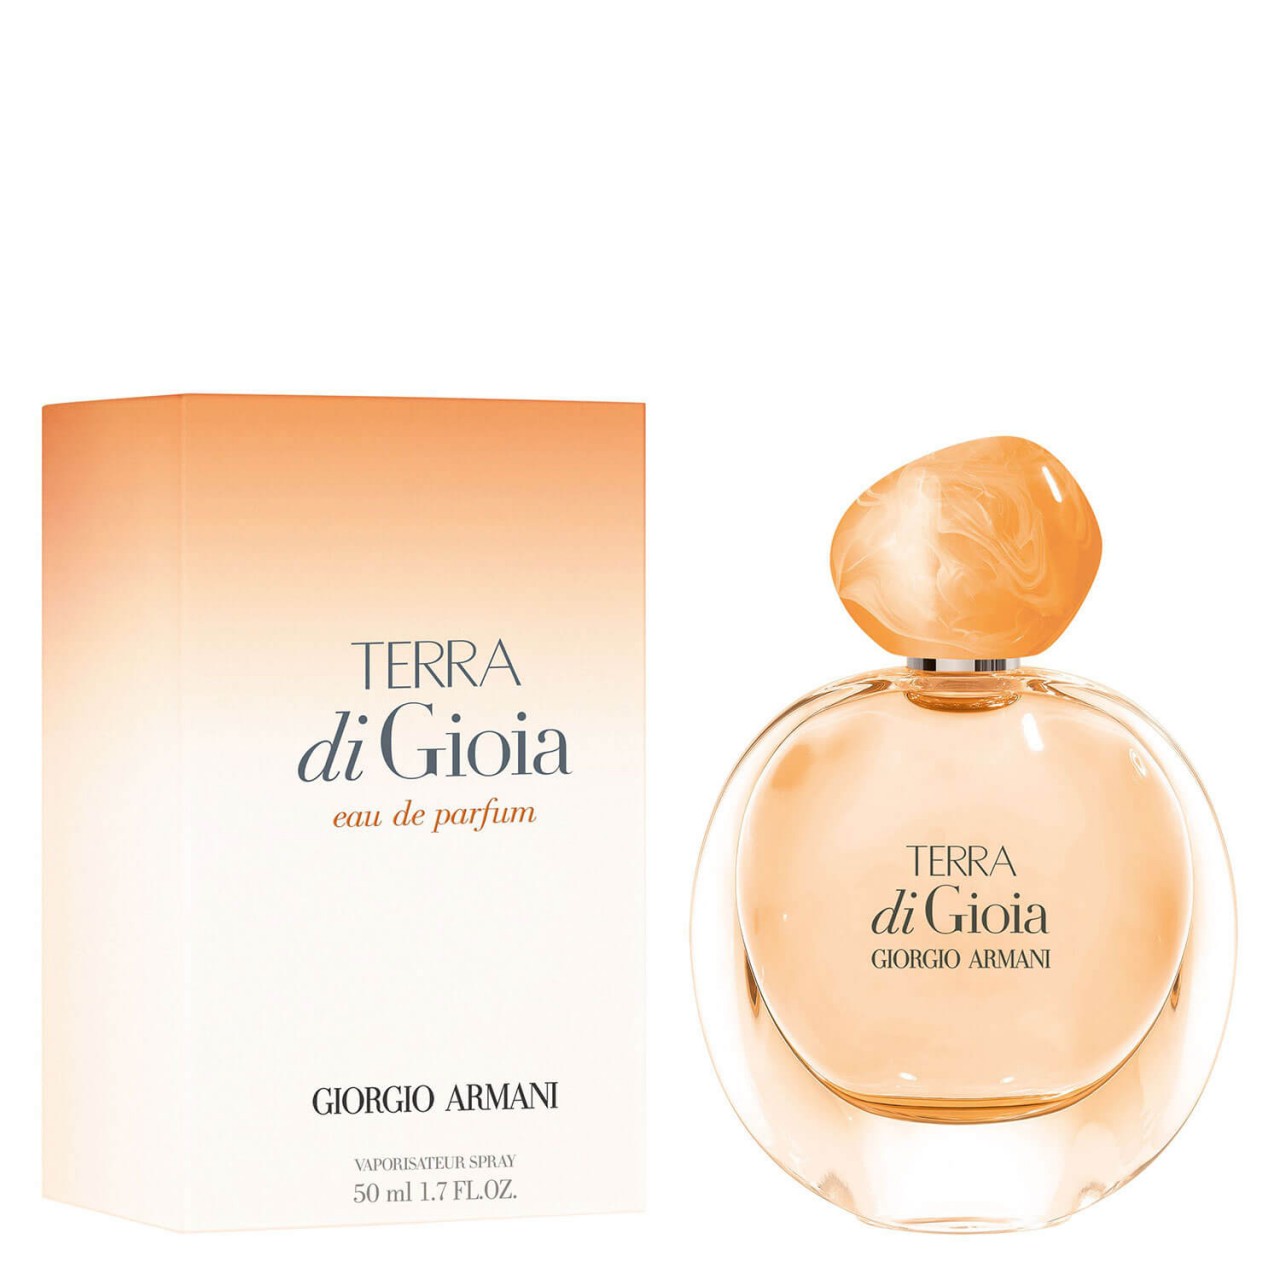 Gìoia - Terra Di Gìoia Eau de Parfum von Giorgio Armani